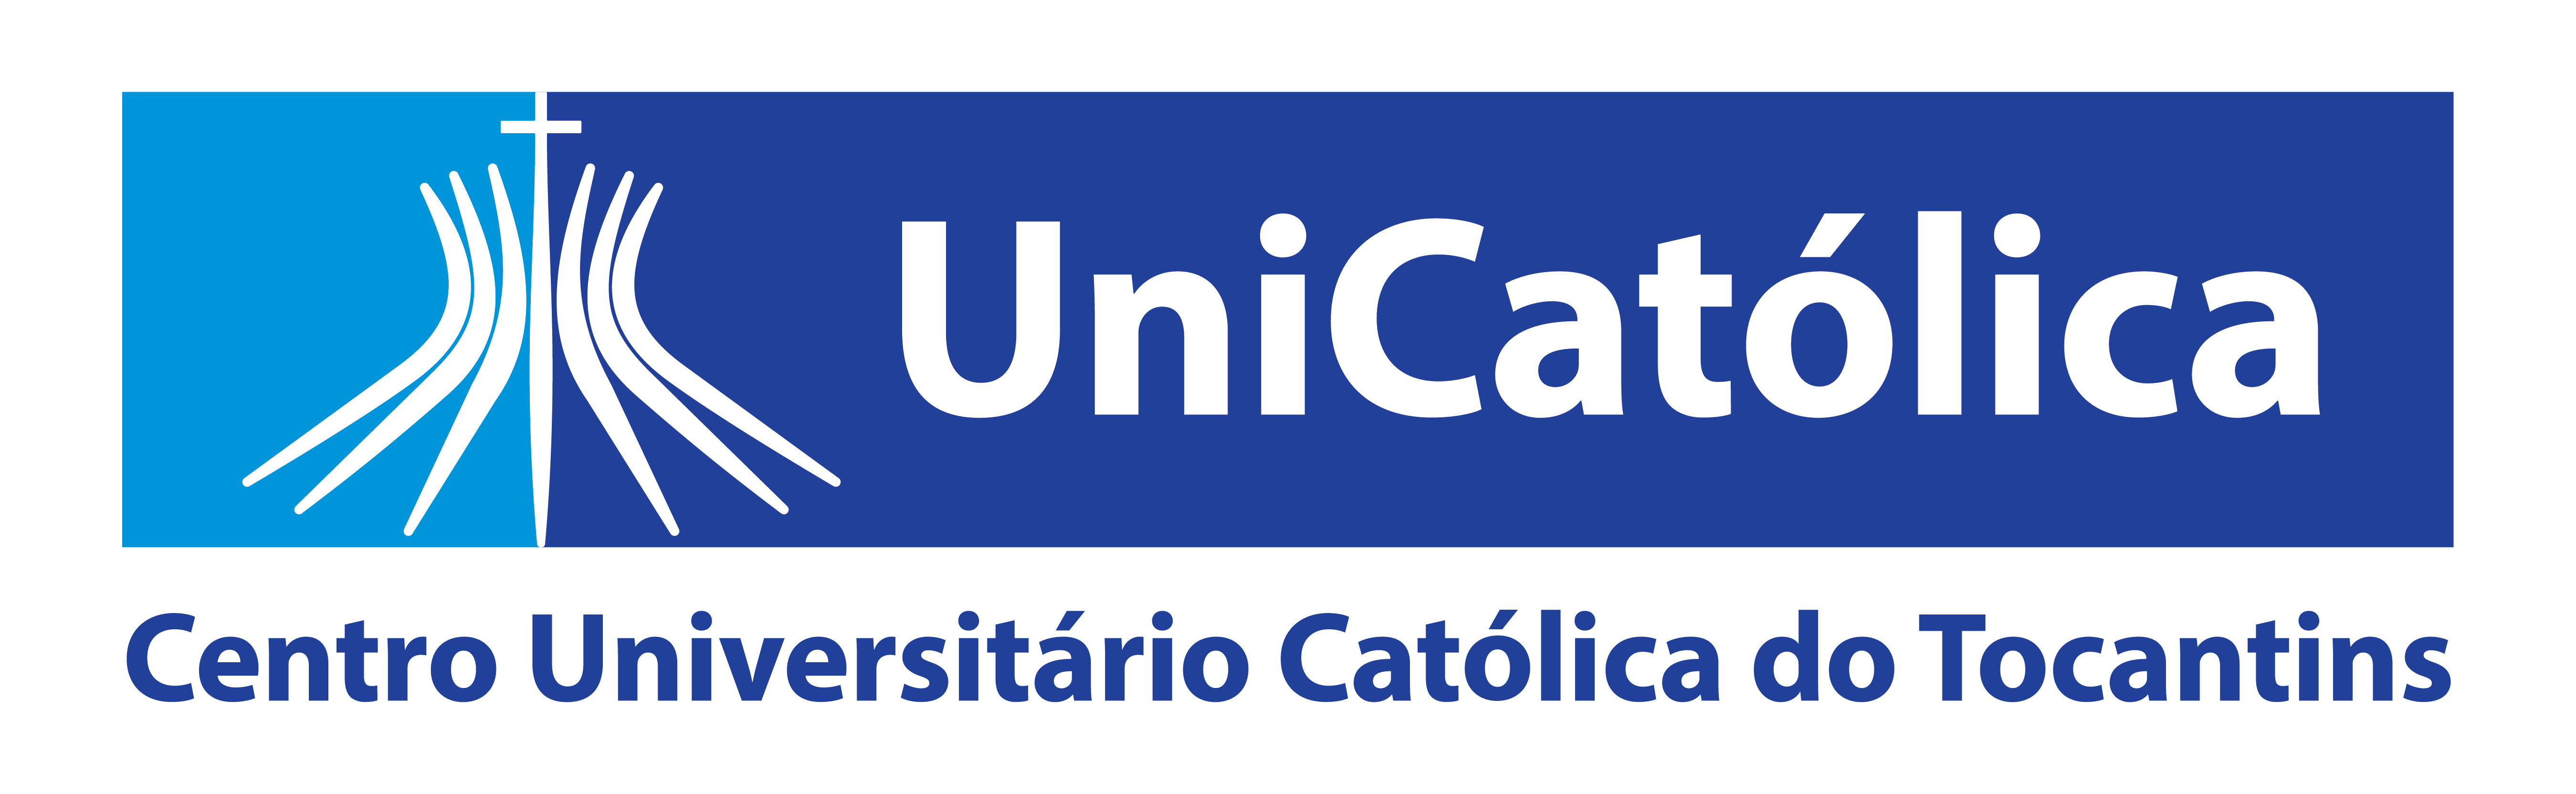 Logomarca Catolica Do Tocantins